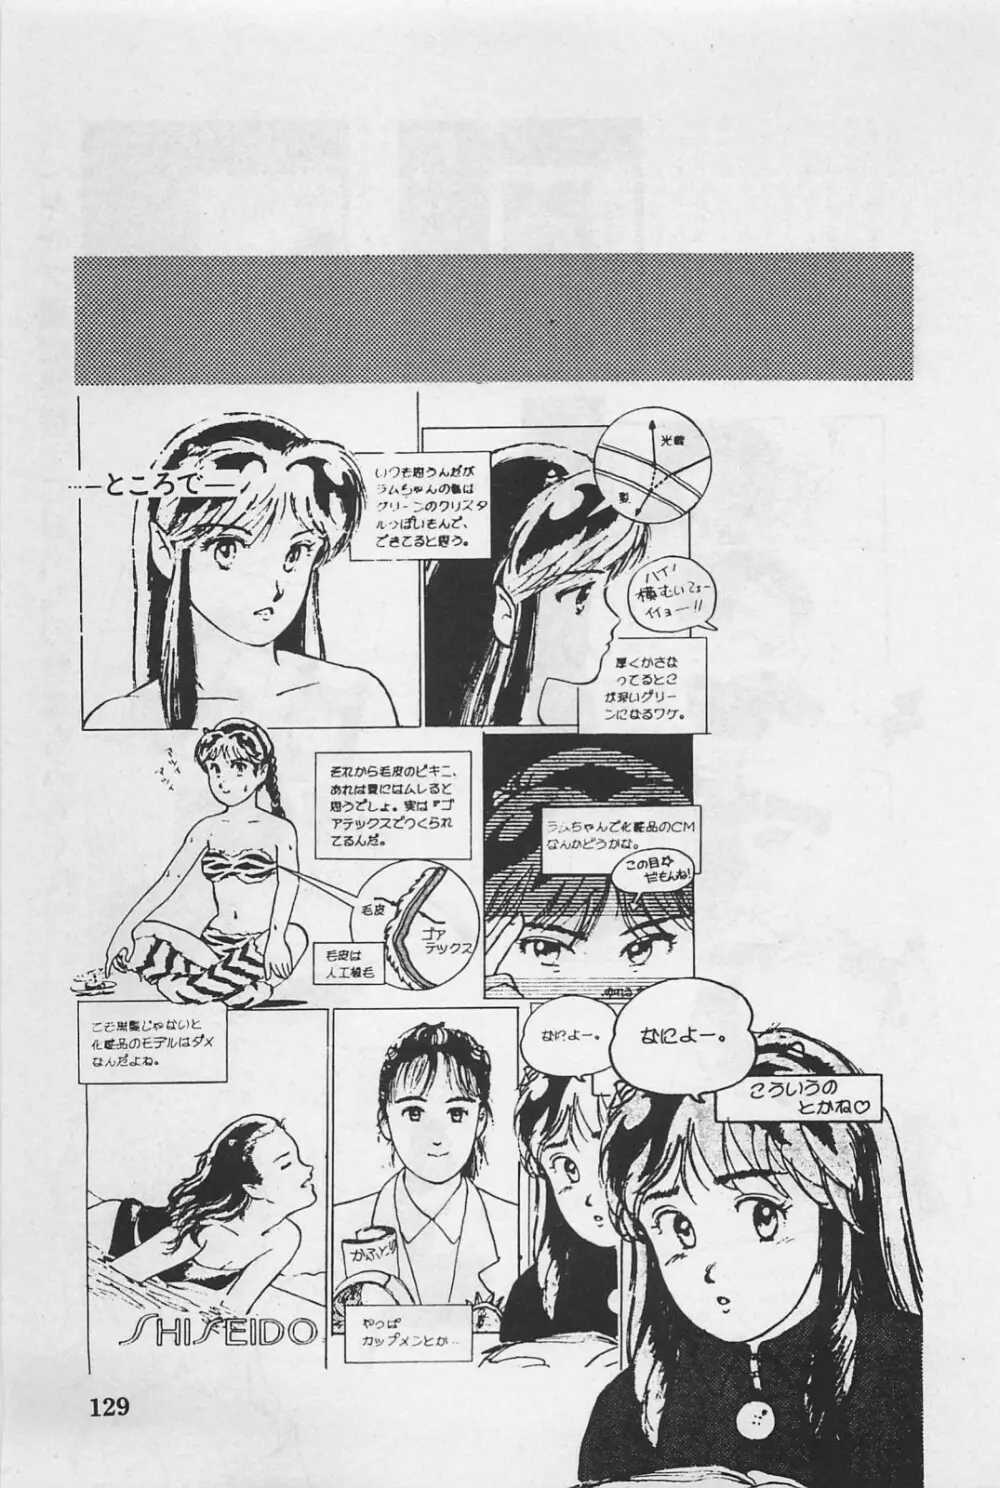 美少女症候群 1985 131ページ